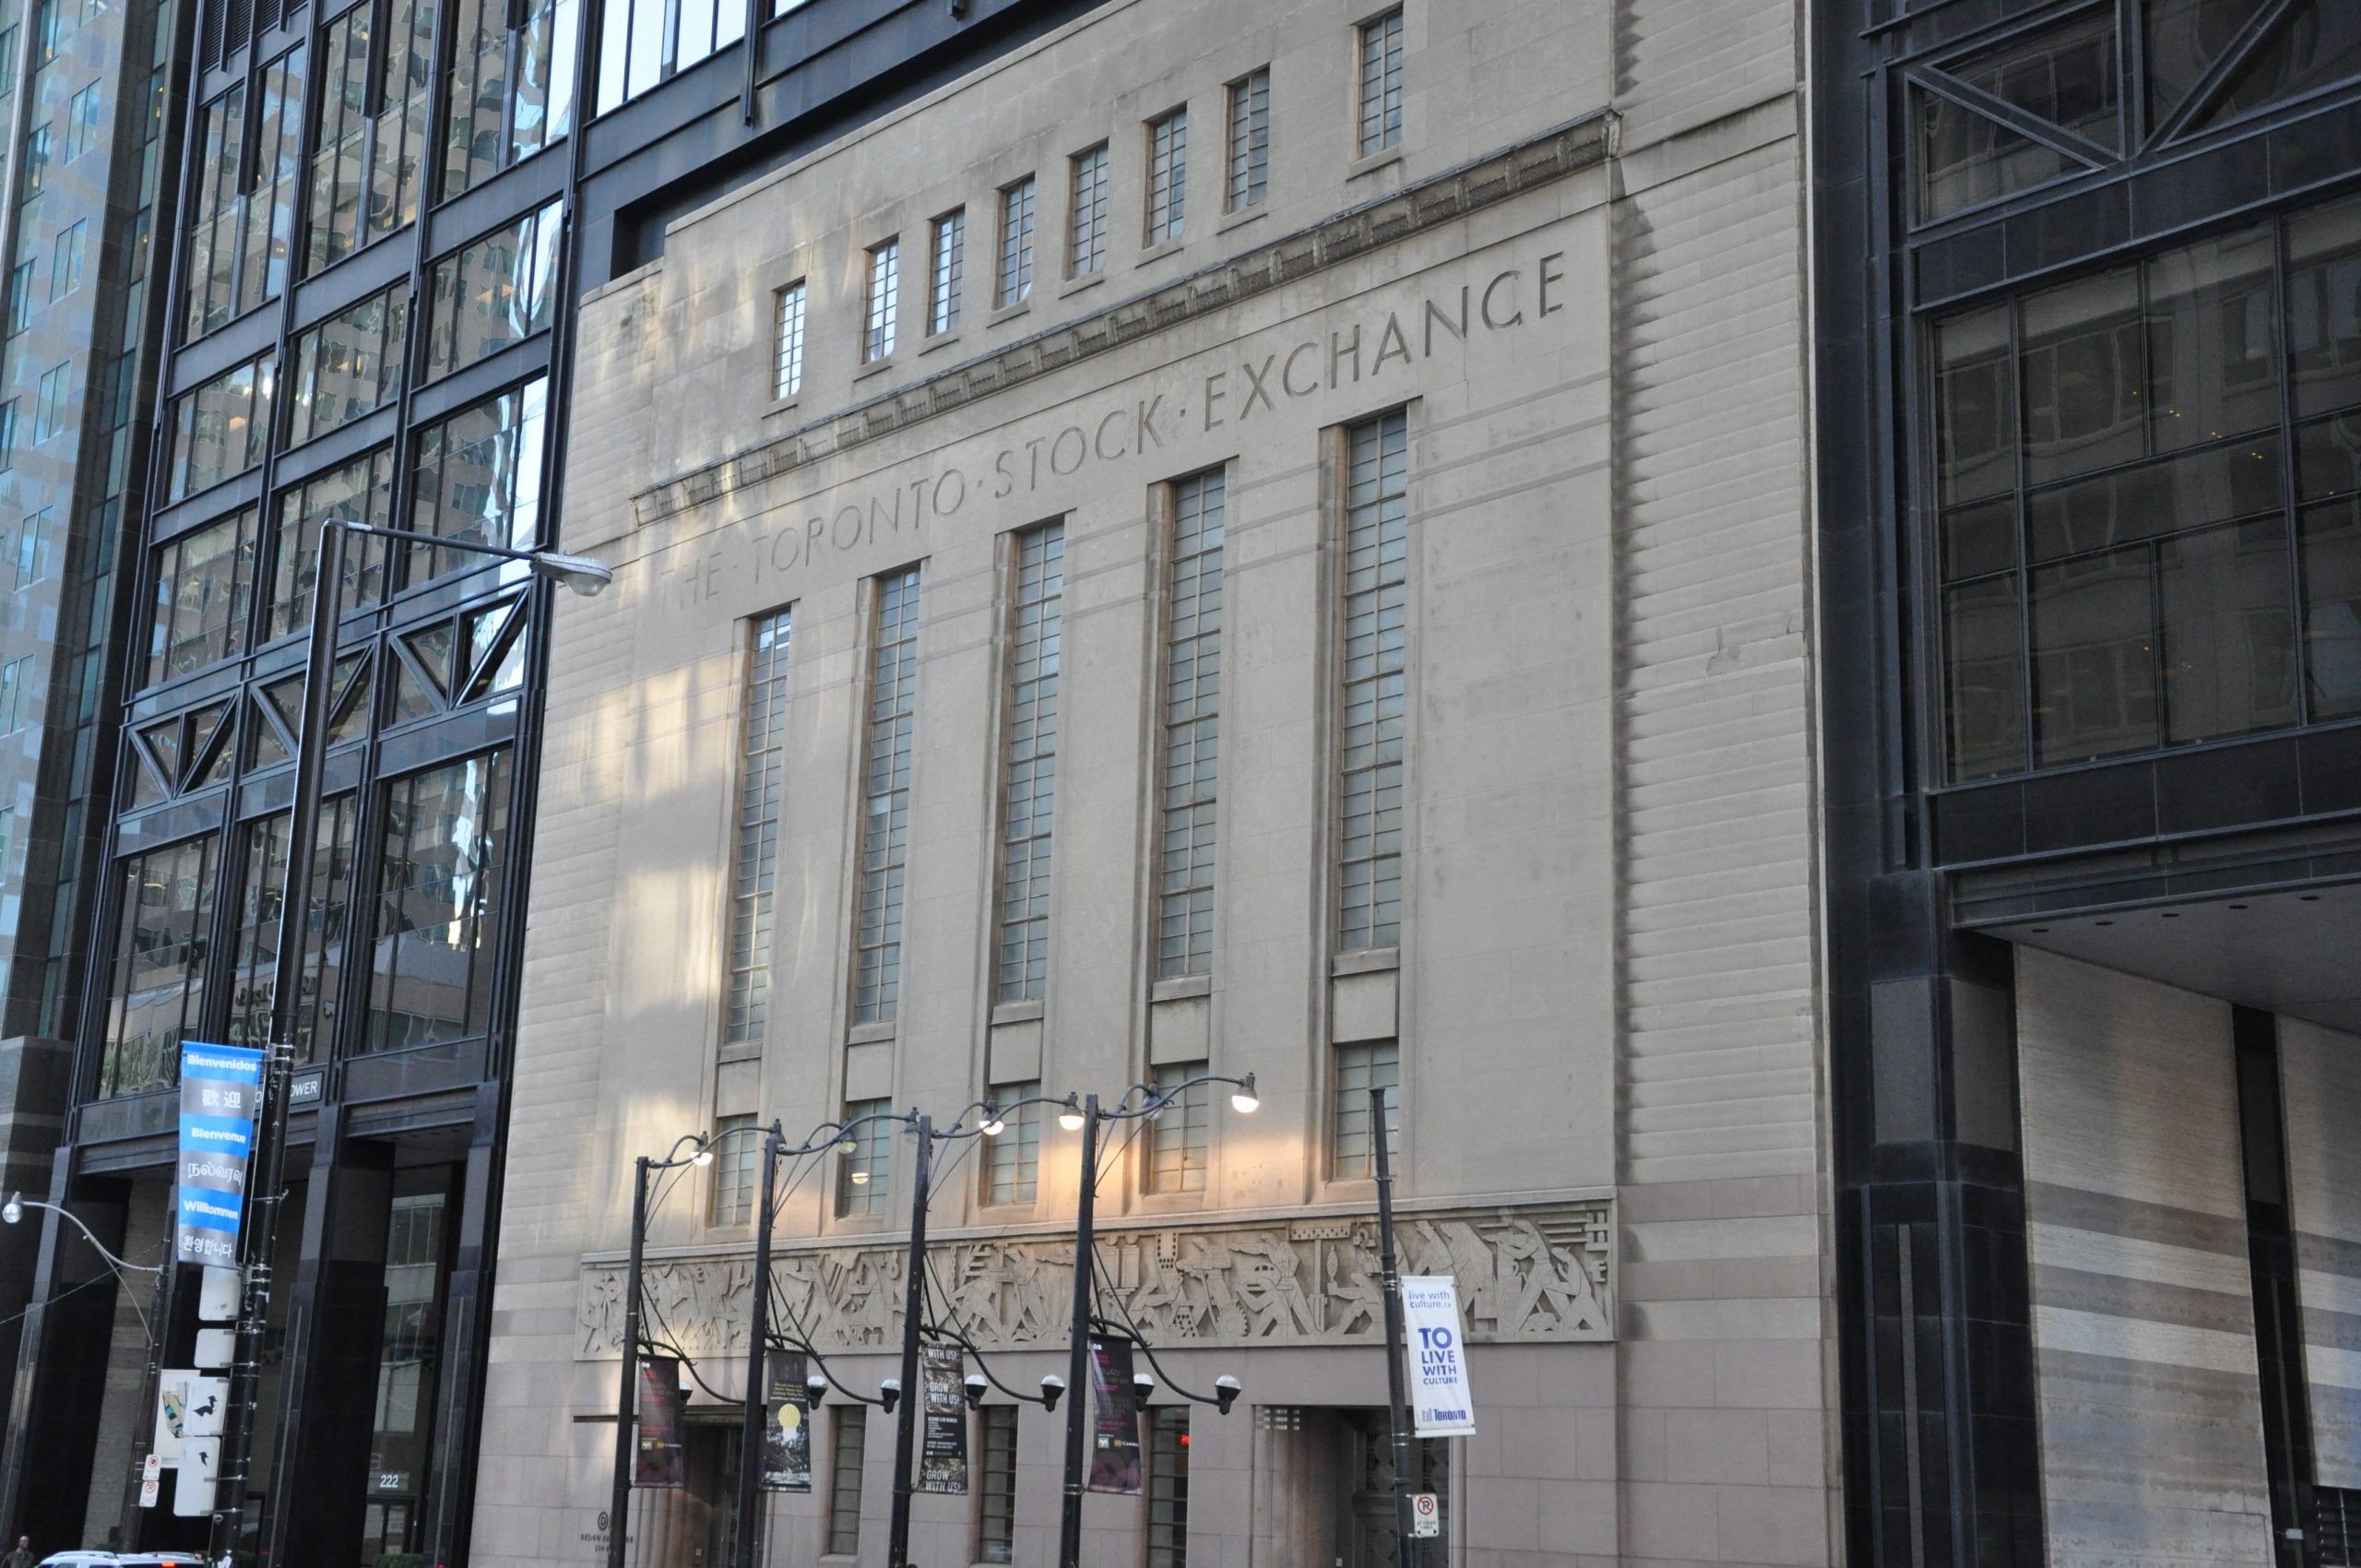 Toronto Stock Exchange building.